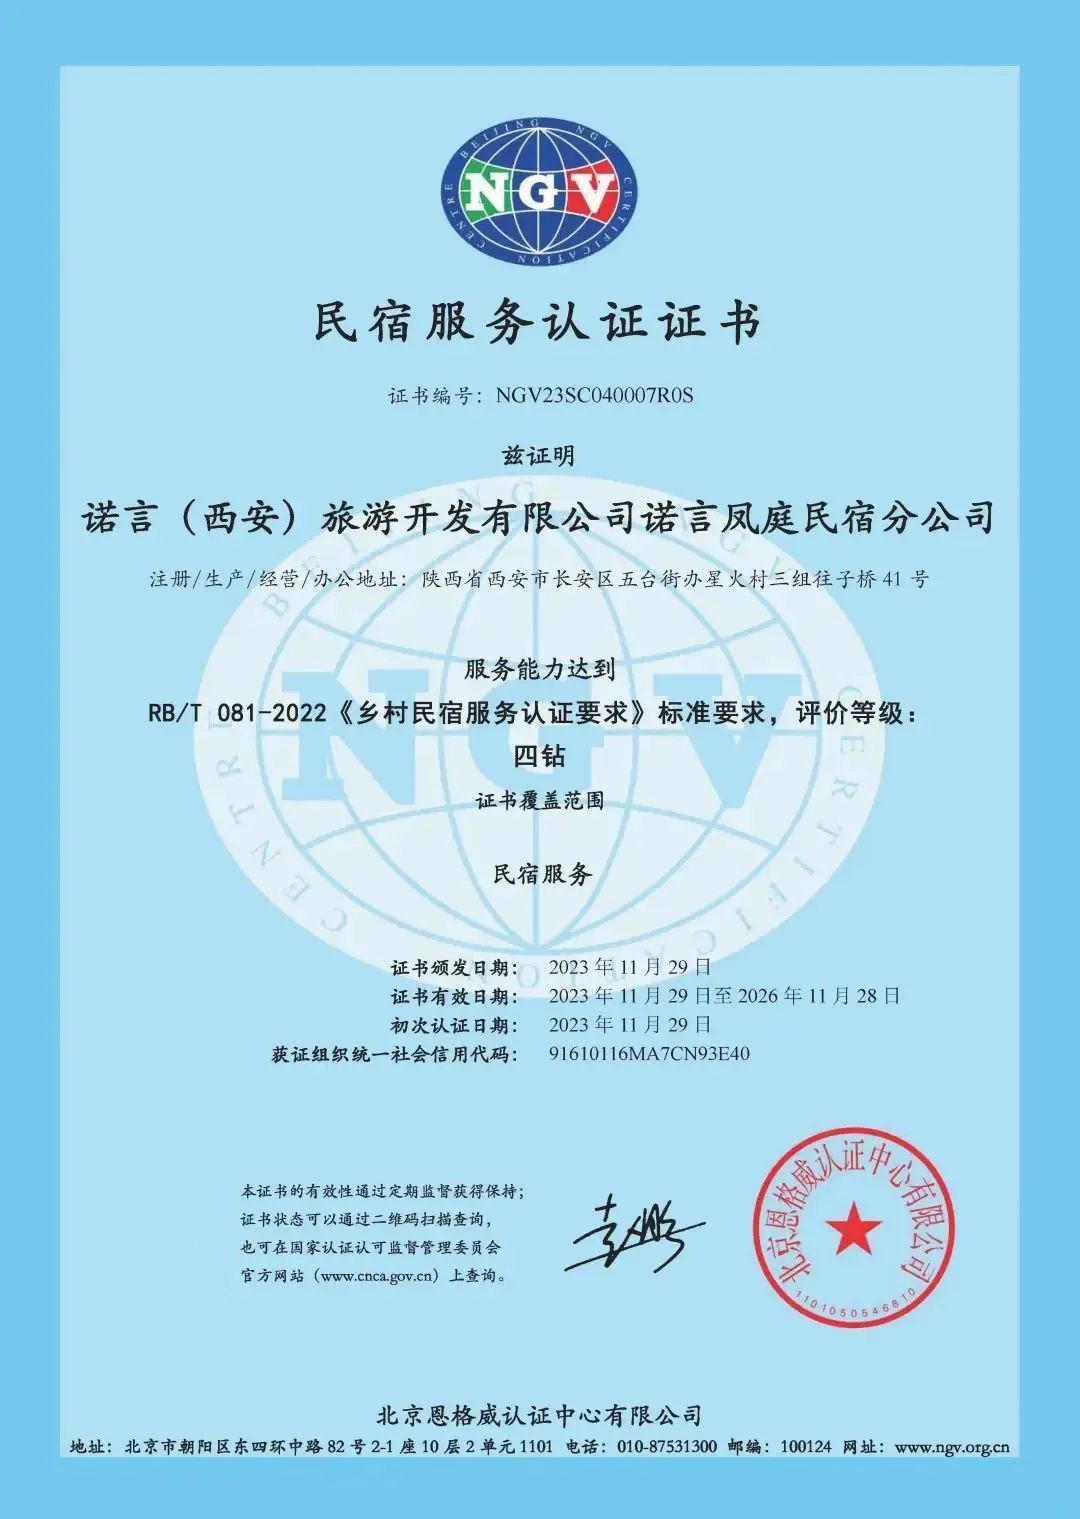 恩格威颁发陕西省首张民宿服务认证证书